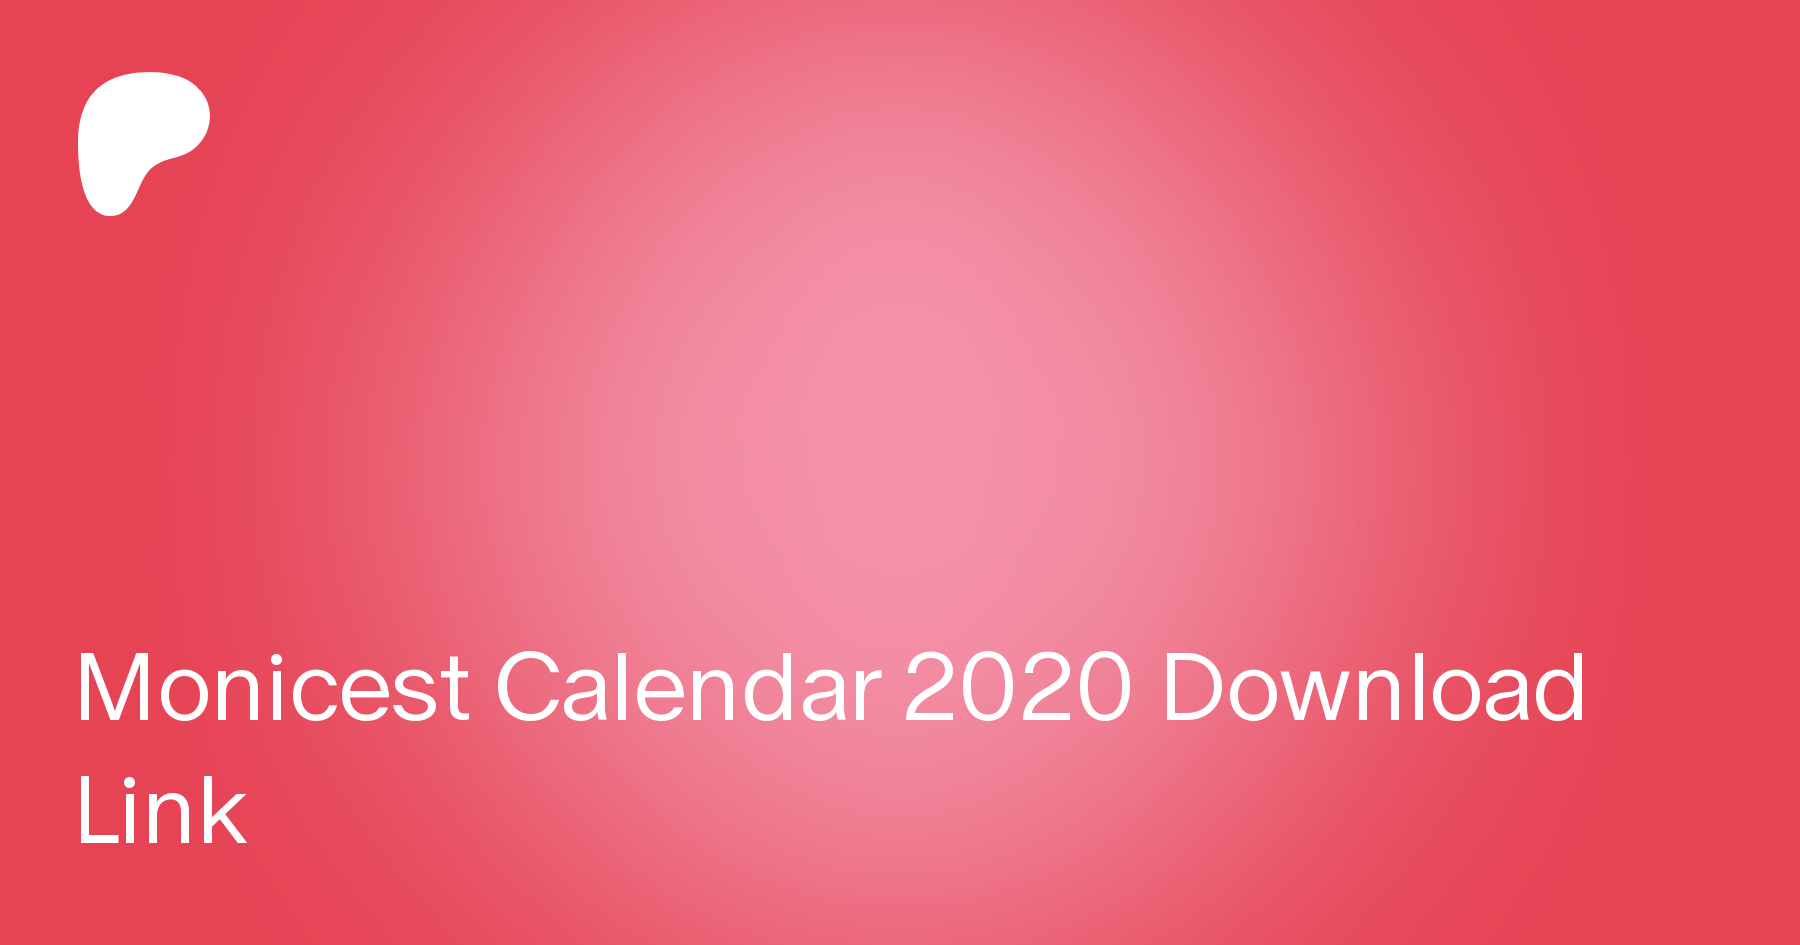 Monicest calendar 2020